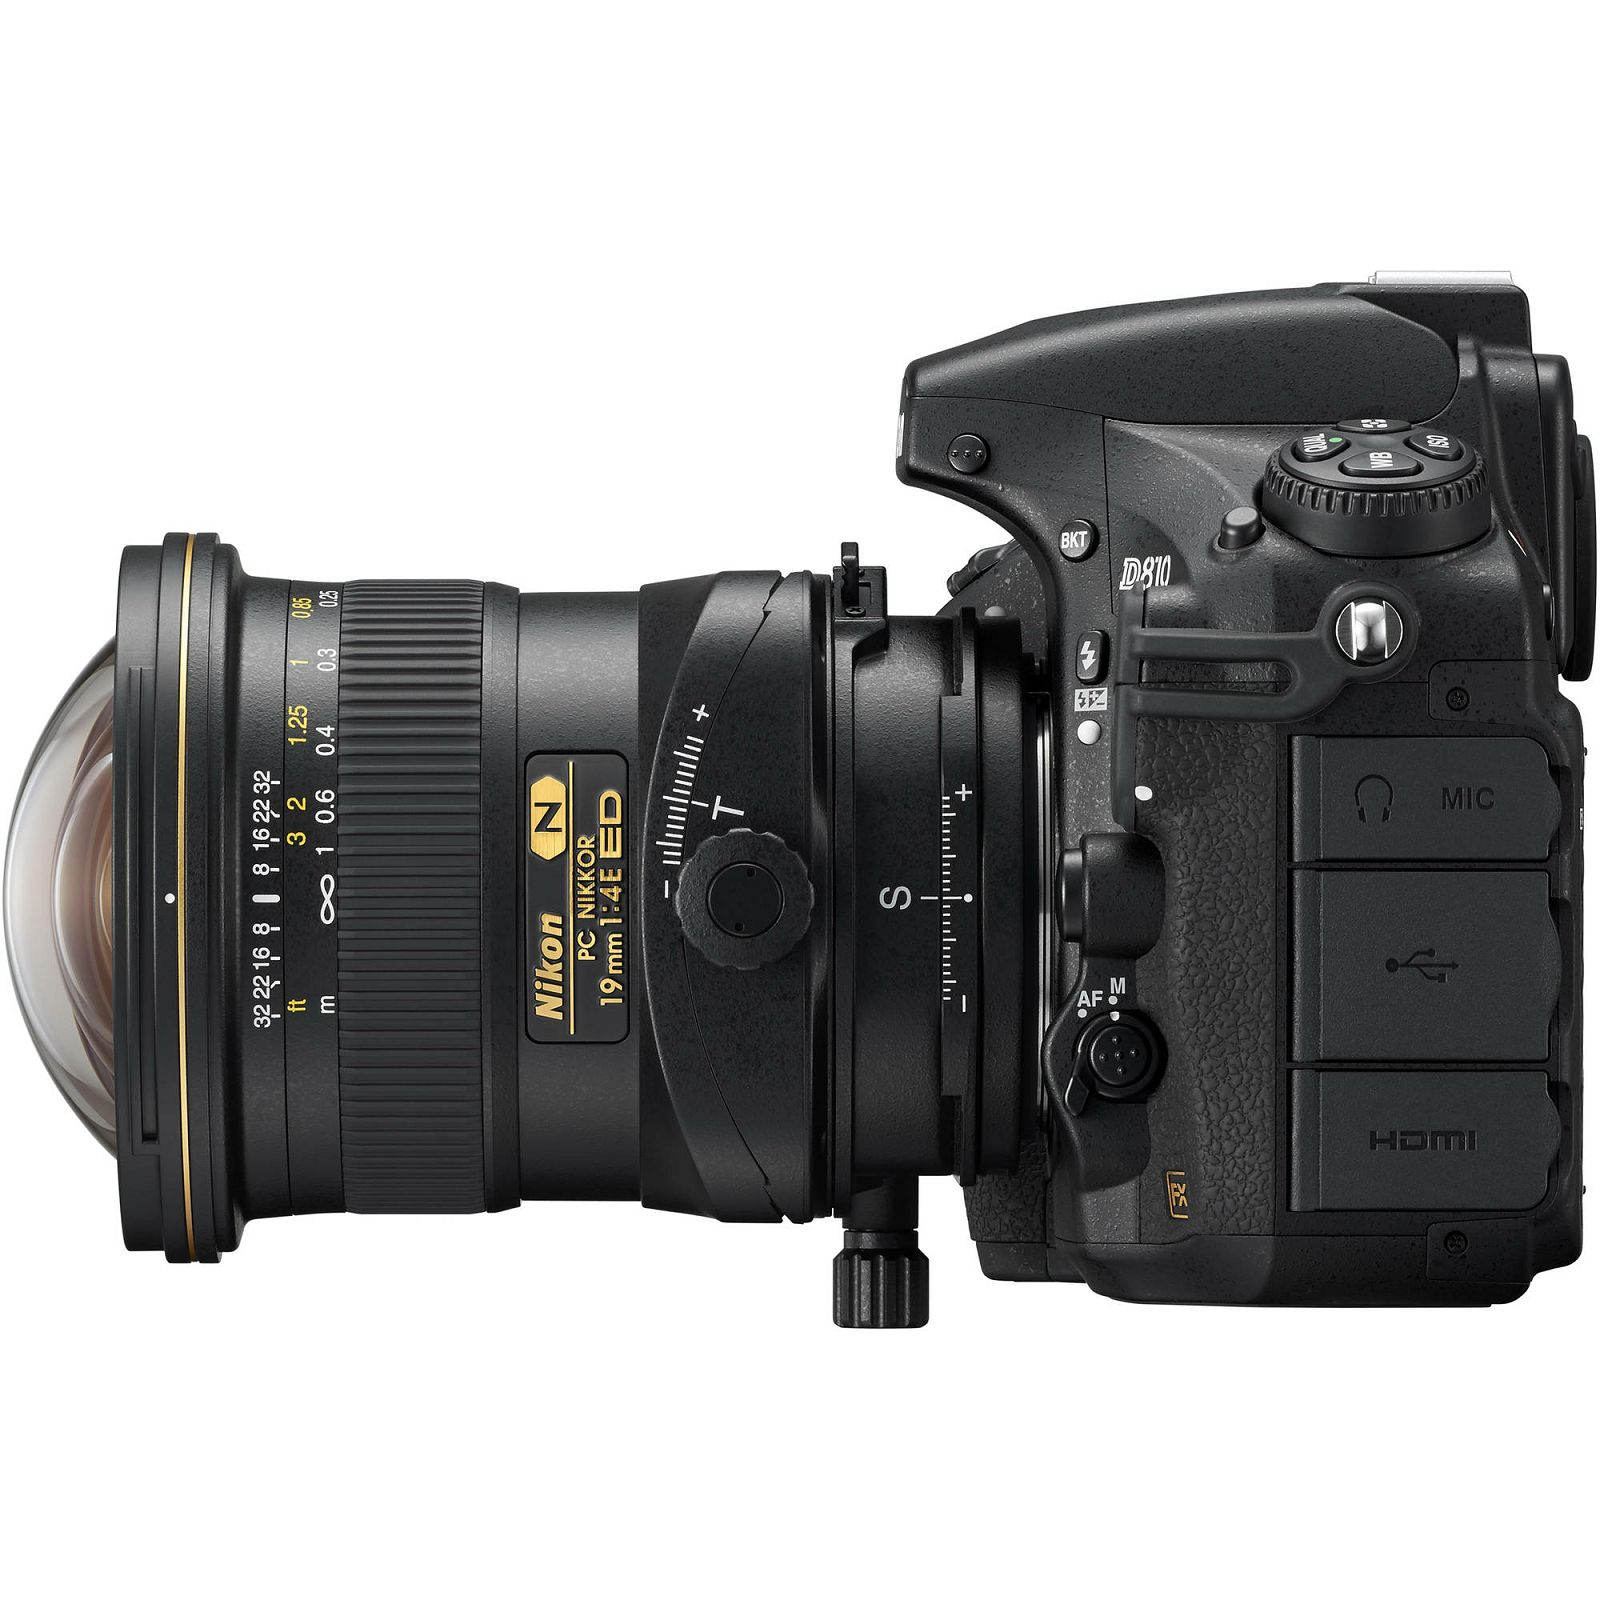 Nikon AI PC-E 19mm f/4E ED tilt-shift širokokutni objektiv Nikkor 19 f/4 D F4 4.0 E Professional prime lens (JAA639DA)